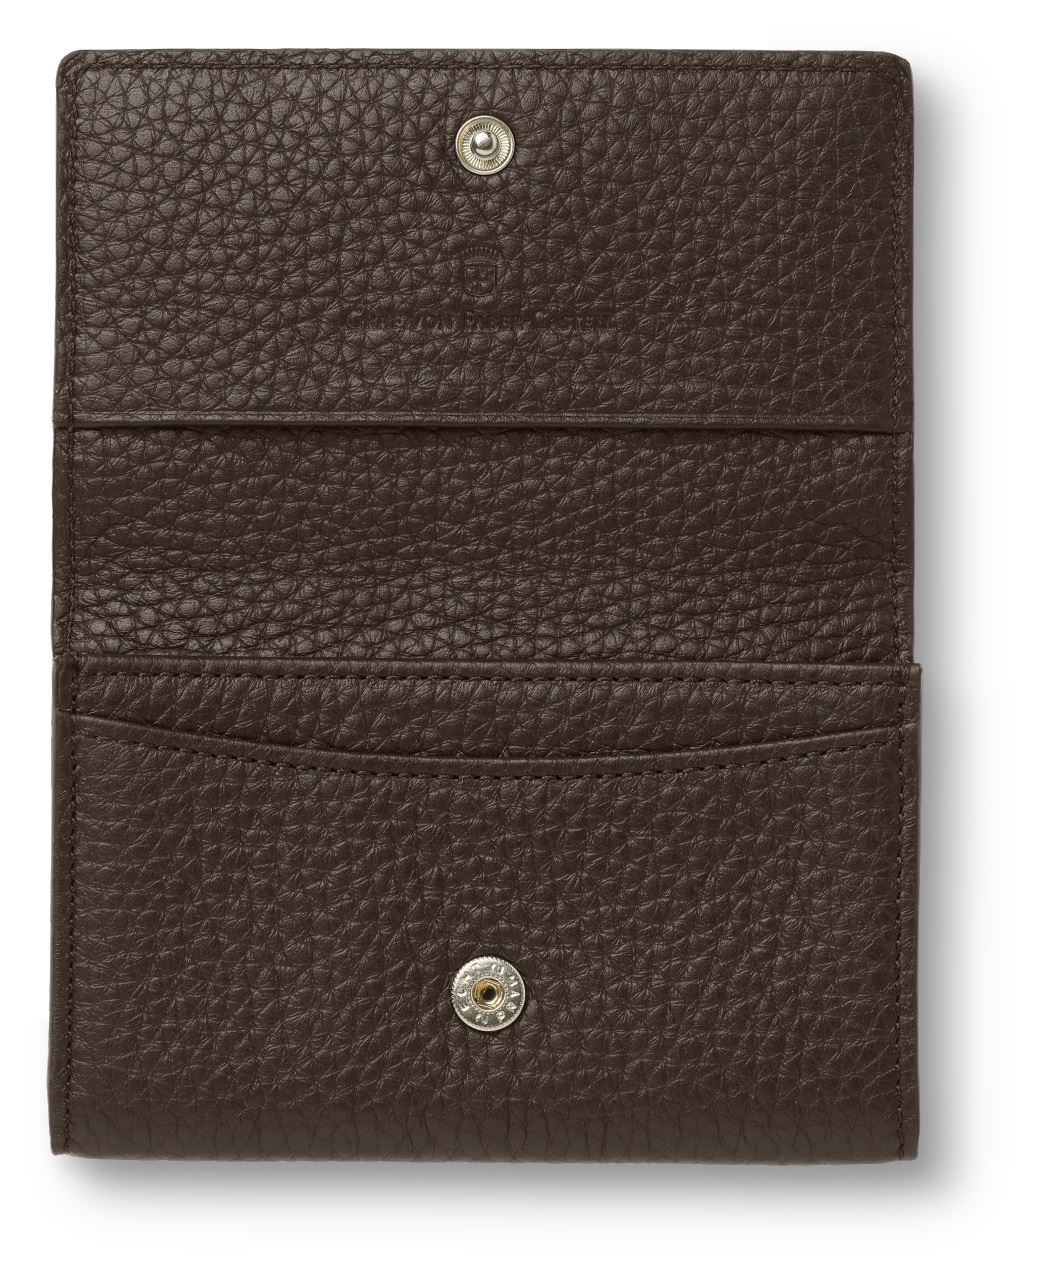 Graf-von-Faber-Castell - Business card case Cashmere, dark brown